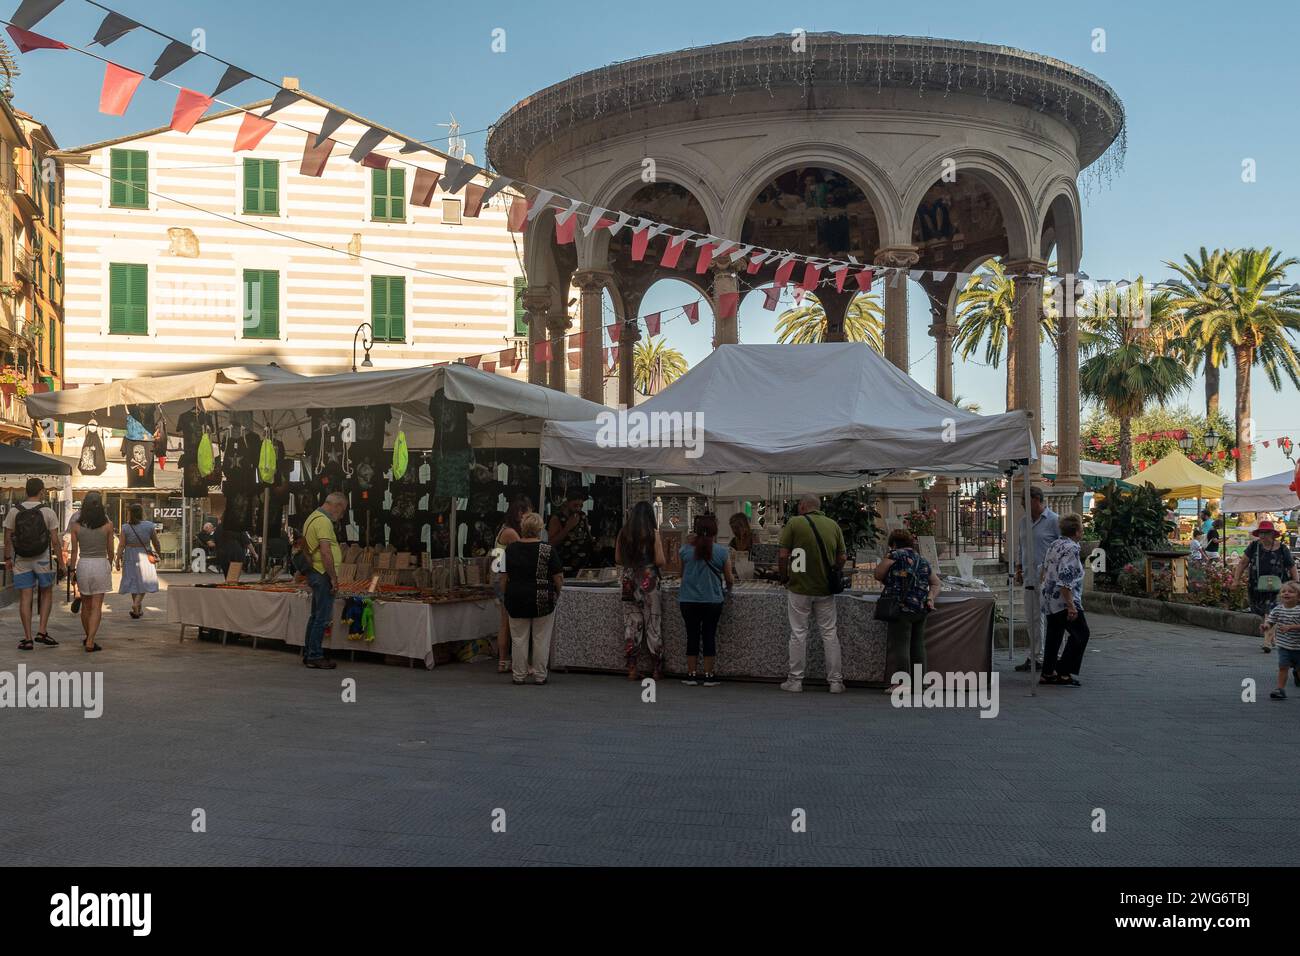 Piazza Martiri della Libertà mit dem Musikkiosk und dem Straßenmarkt während des Patronatsfestes im Juli, Rapallo, Genua, Ligurien, Italien Stockfoto